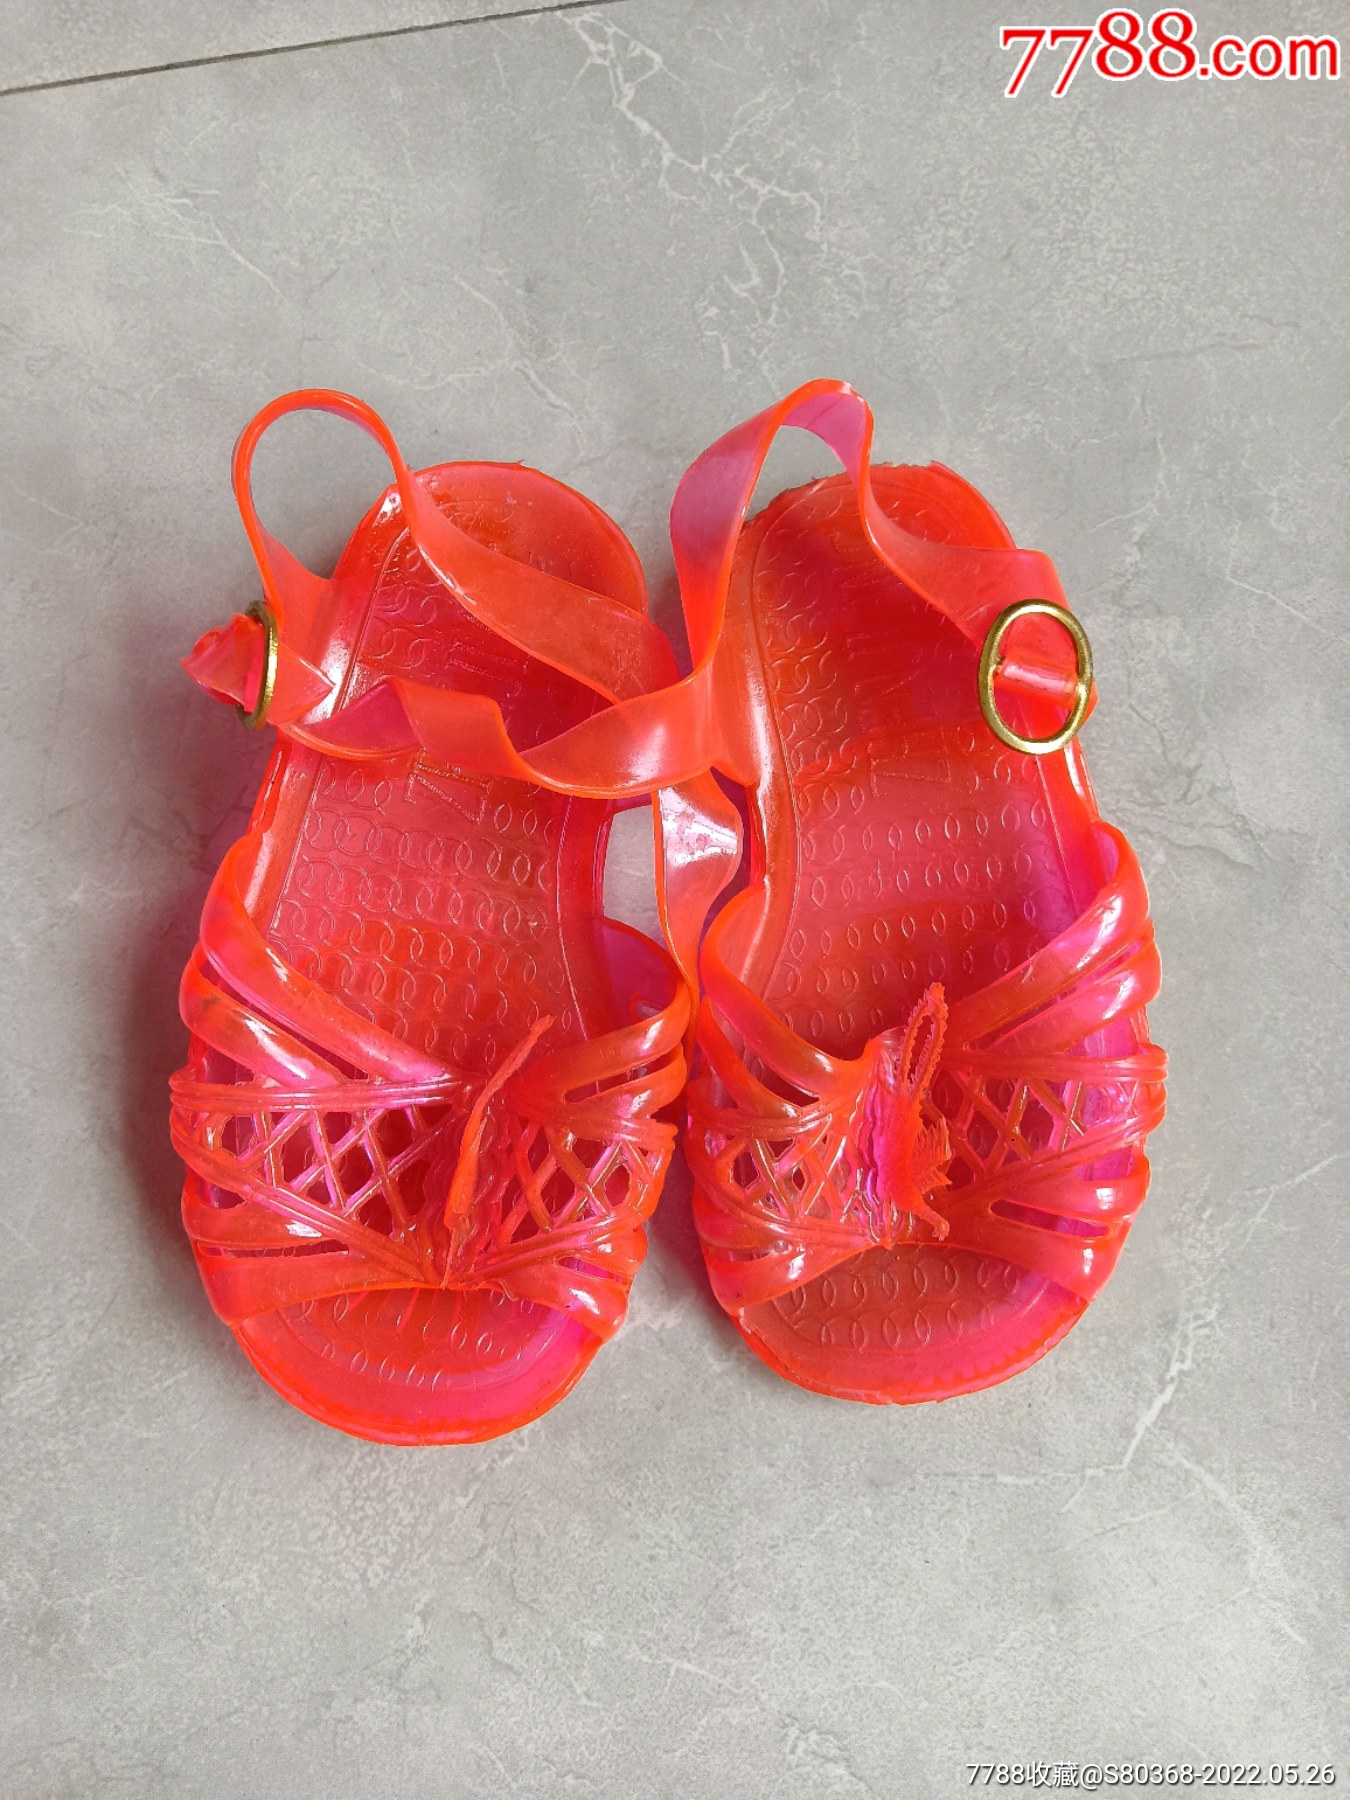 八十年代怀旧收藏品一一儿童塑料女孩凉鞋凤凰式样非常少见